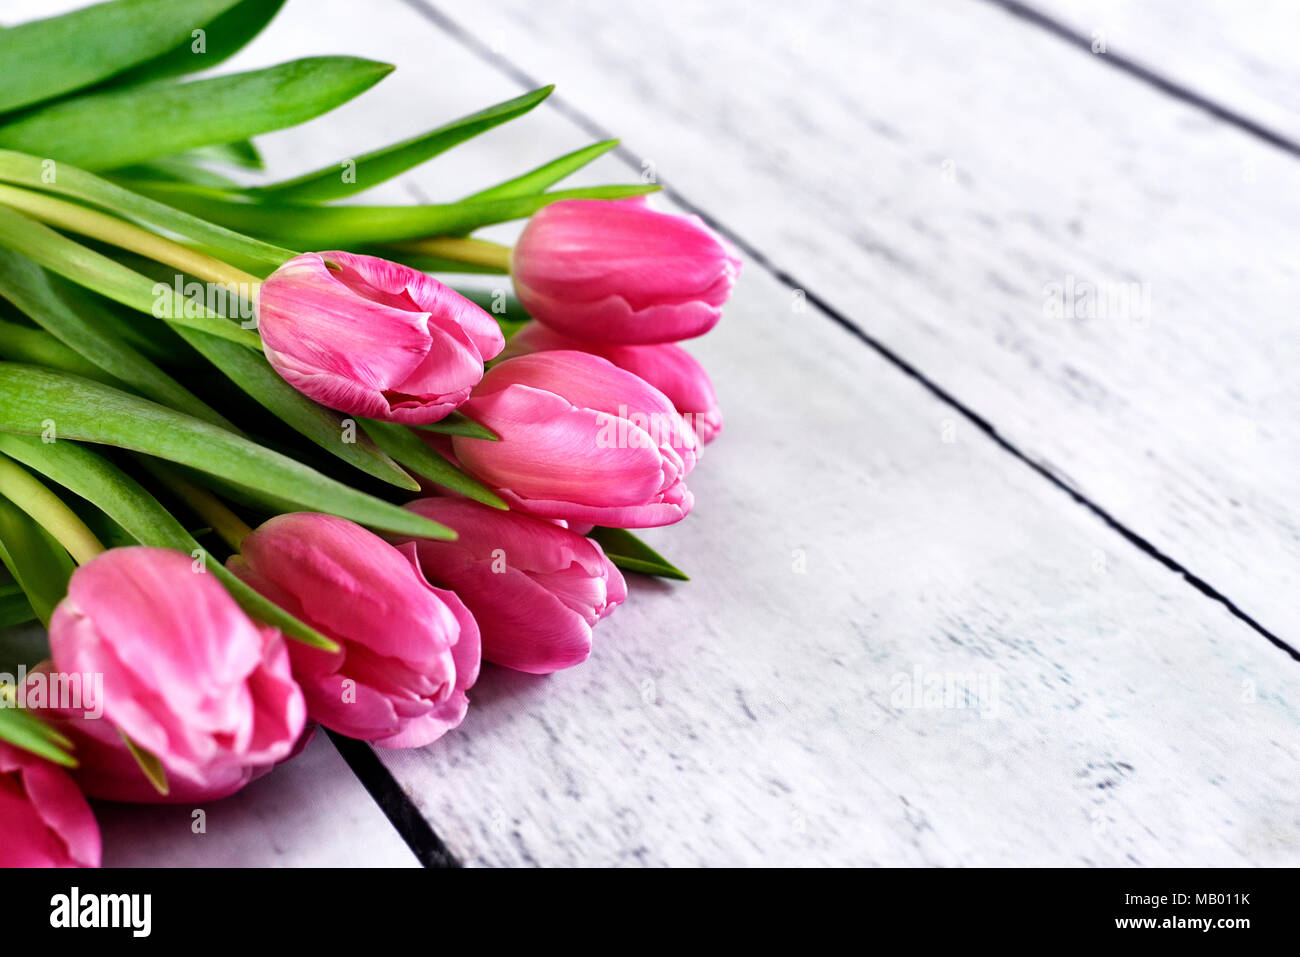 Rosa Tulpen oder Tulip Blumenstrauß auf einem Holztisch. Frühling Hintergrund mit frischen Blumenstrauß und Kopieren. Dekorative Sommer Hintergrund. Stockfoto